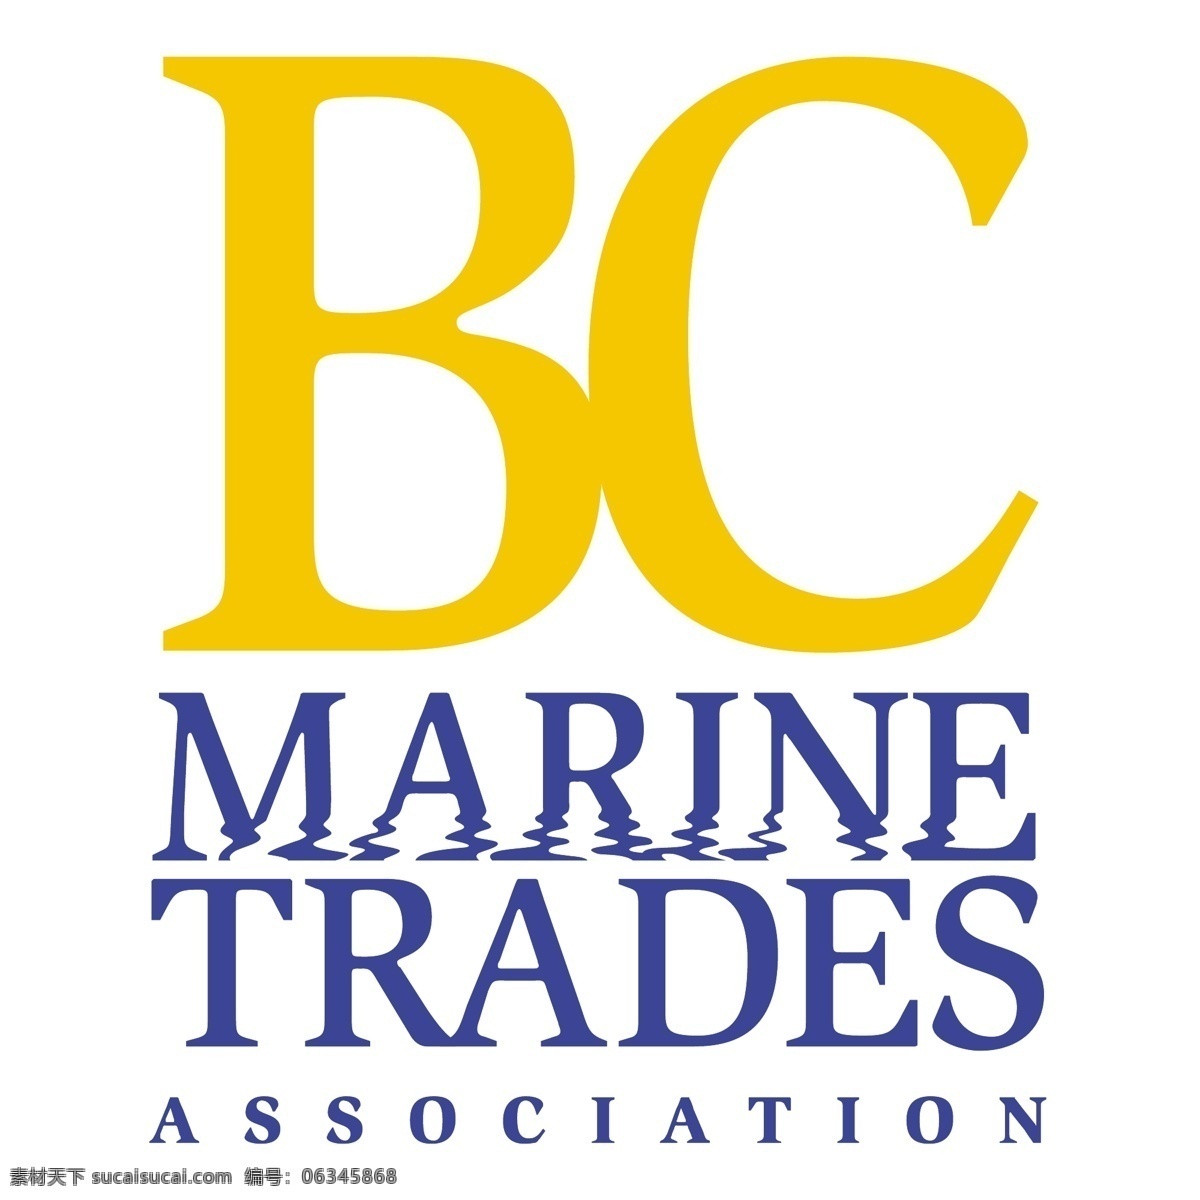 公元前 海洋 贸易 协会 自由诗 行业协会 标志 bc 免费 psd源文件 logo设计